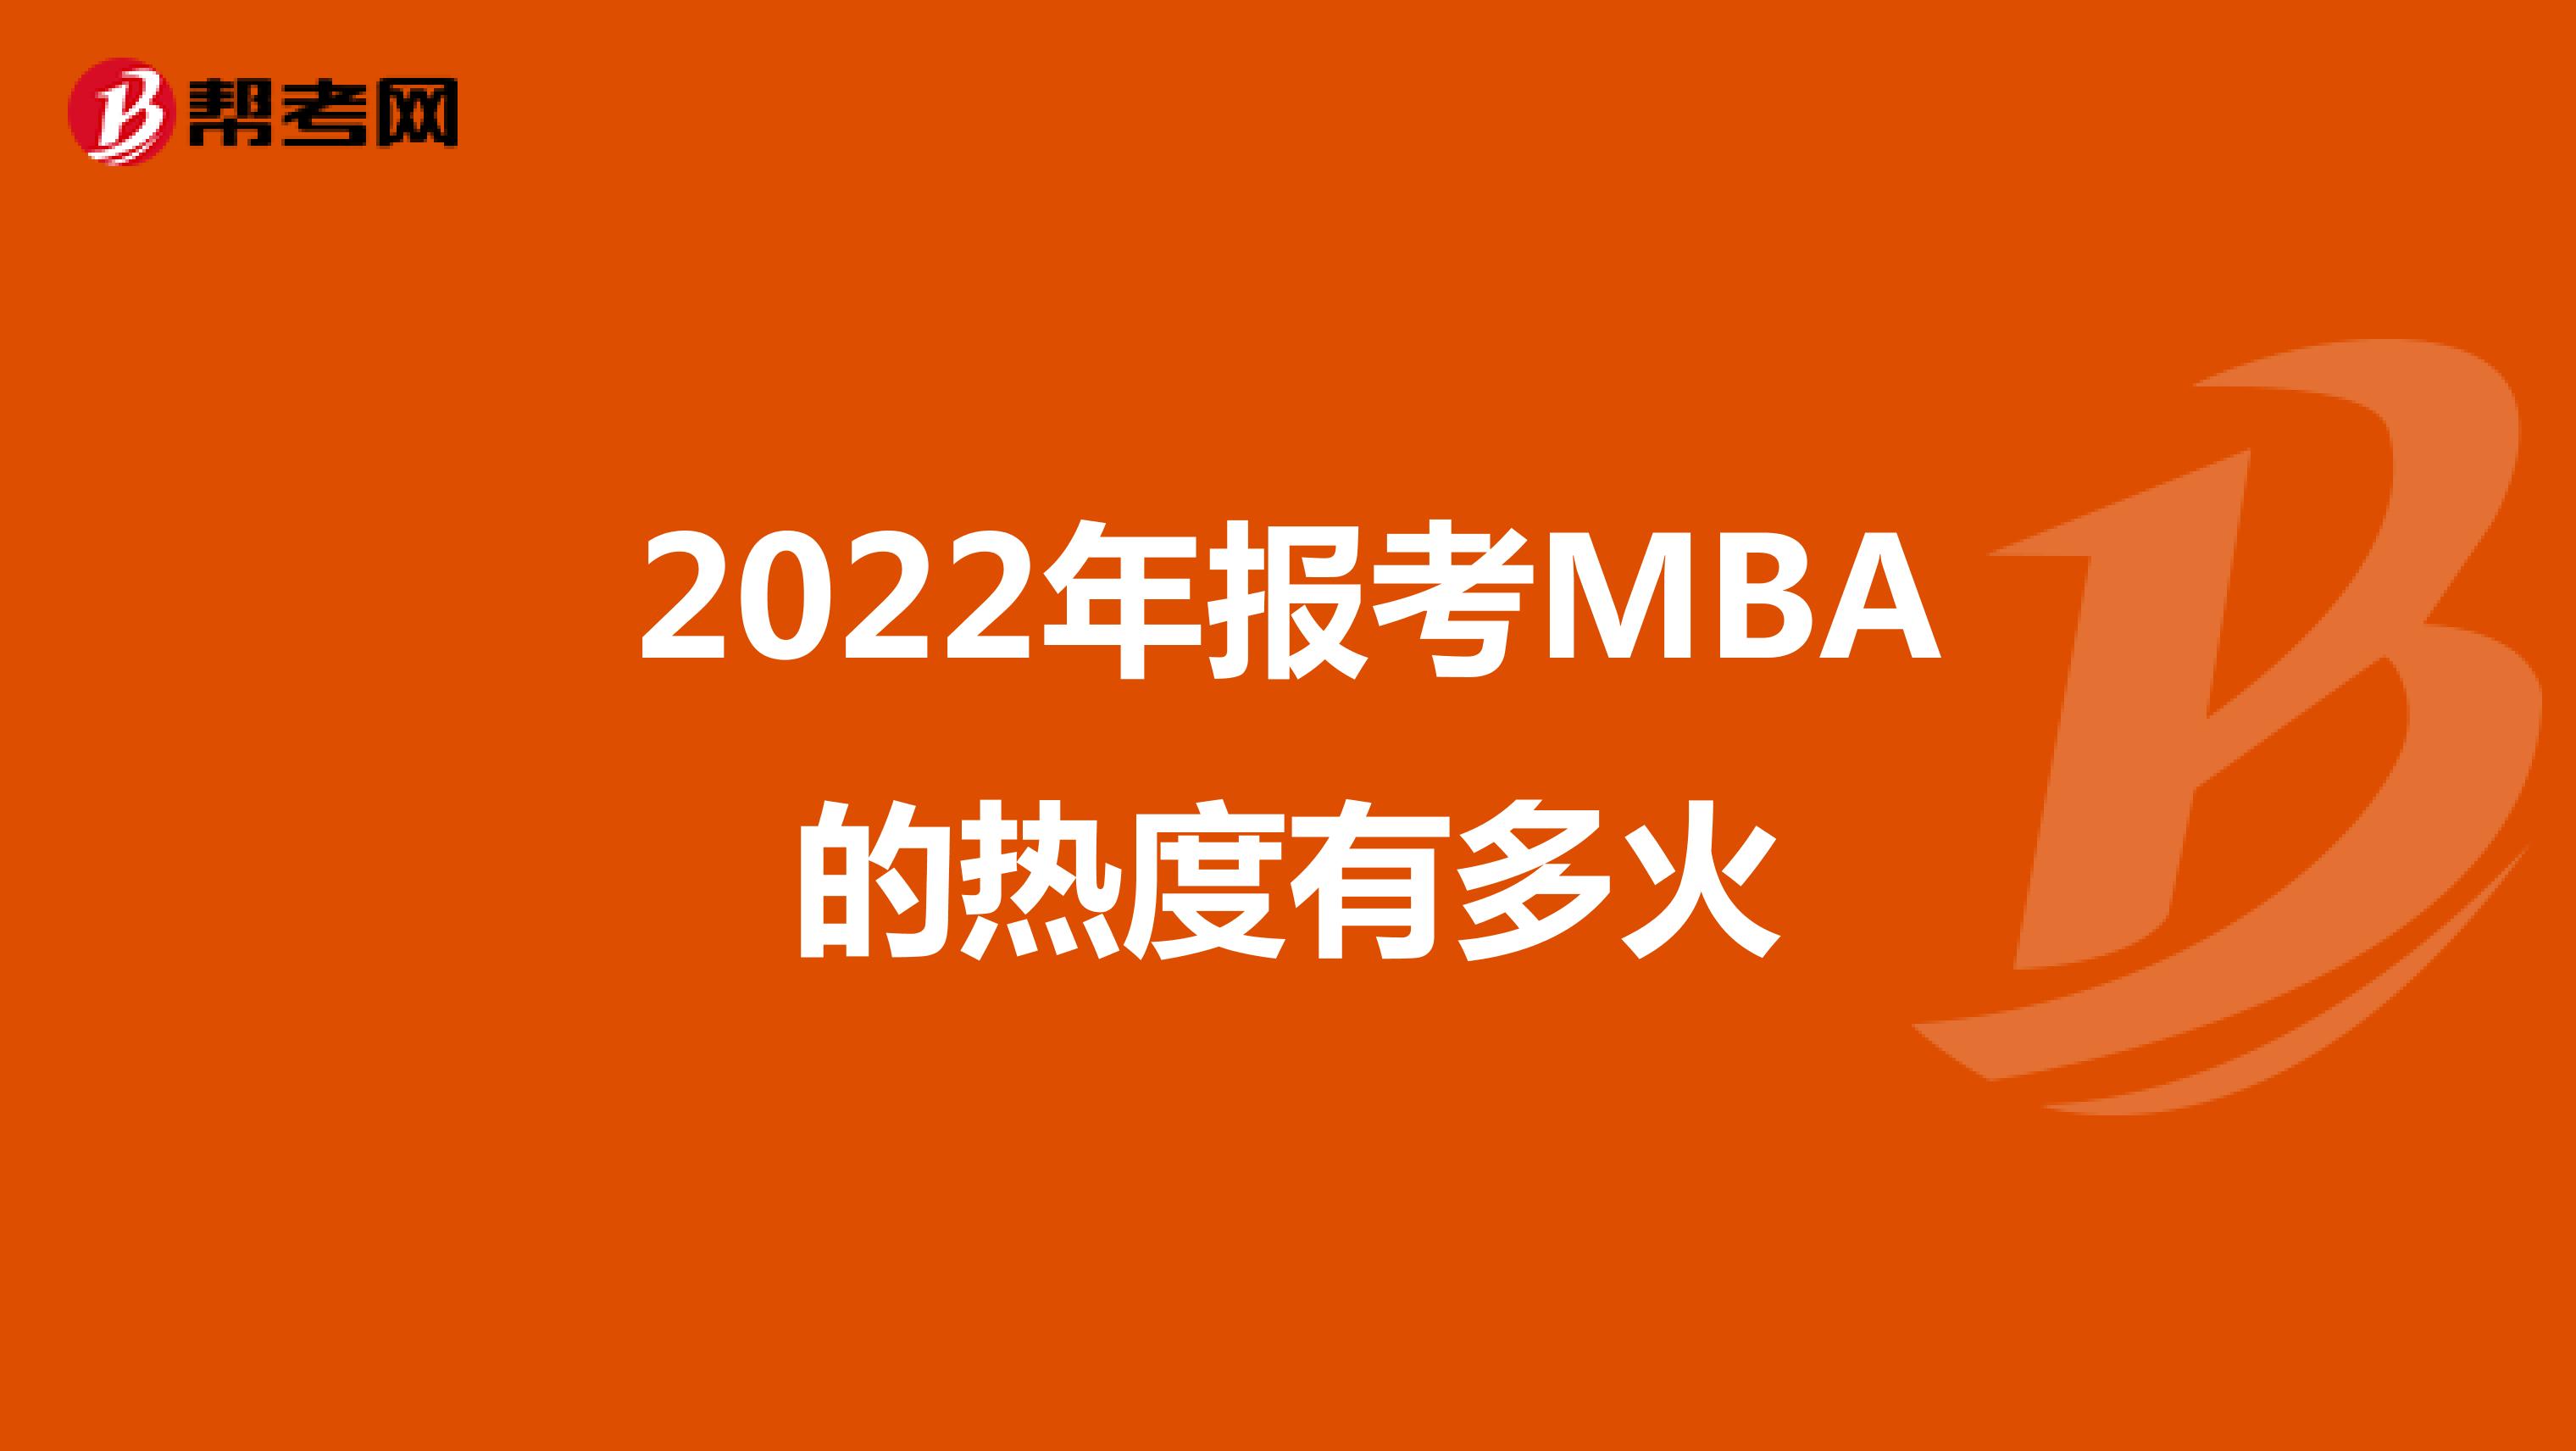  2022年报考MBA的热度有多火